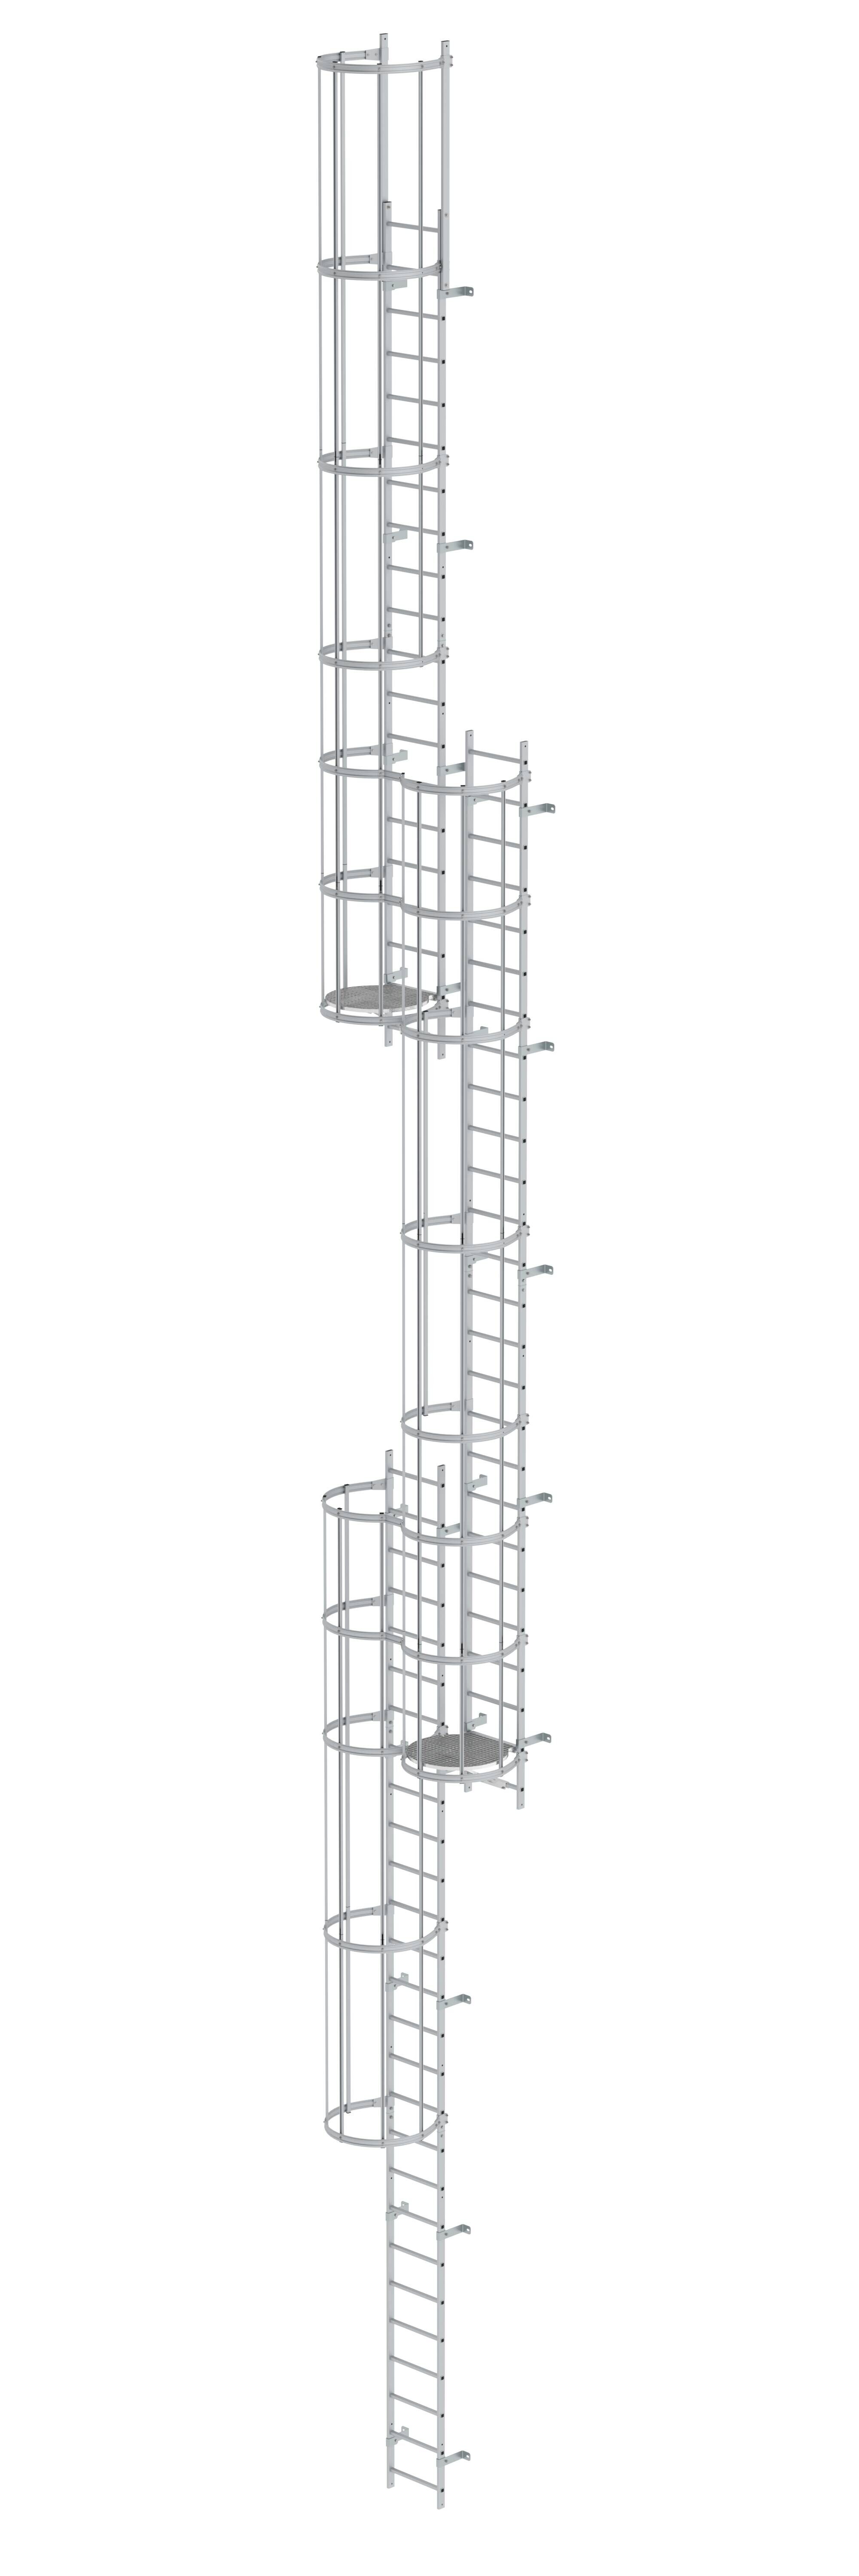 Mehrzügige Steigleiter mit Rückenschutz (Notleiter) Aluminium eloxiert 17,16m